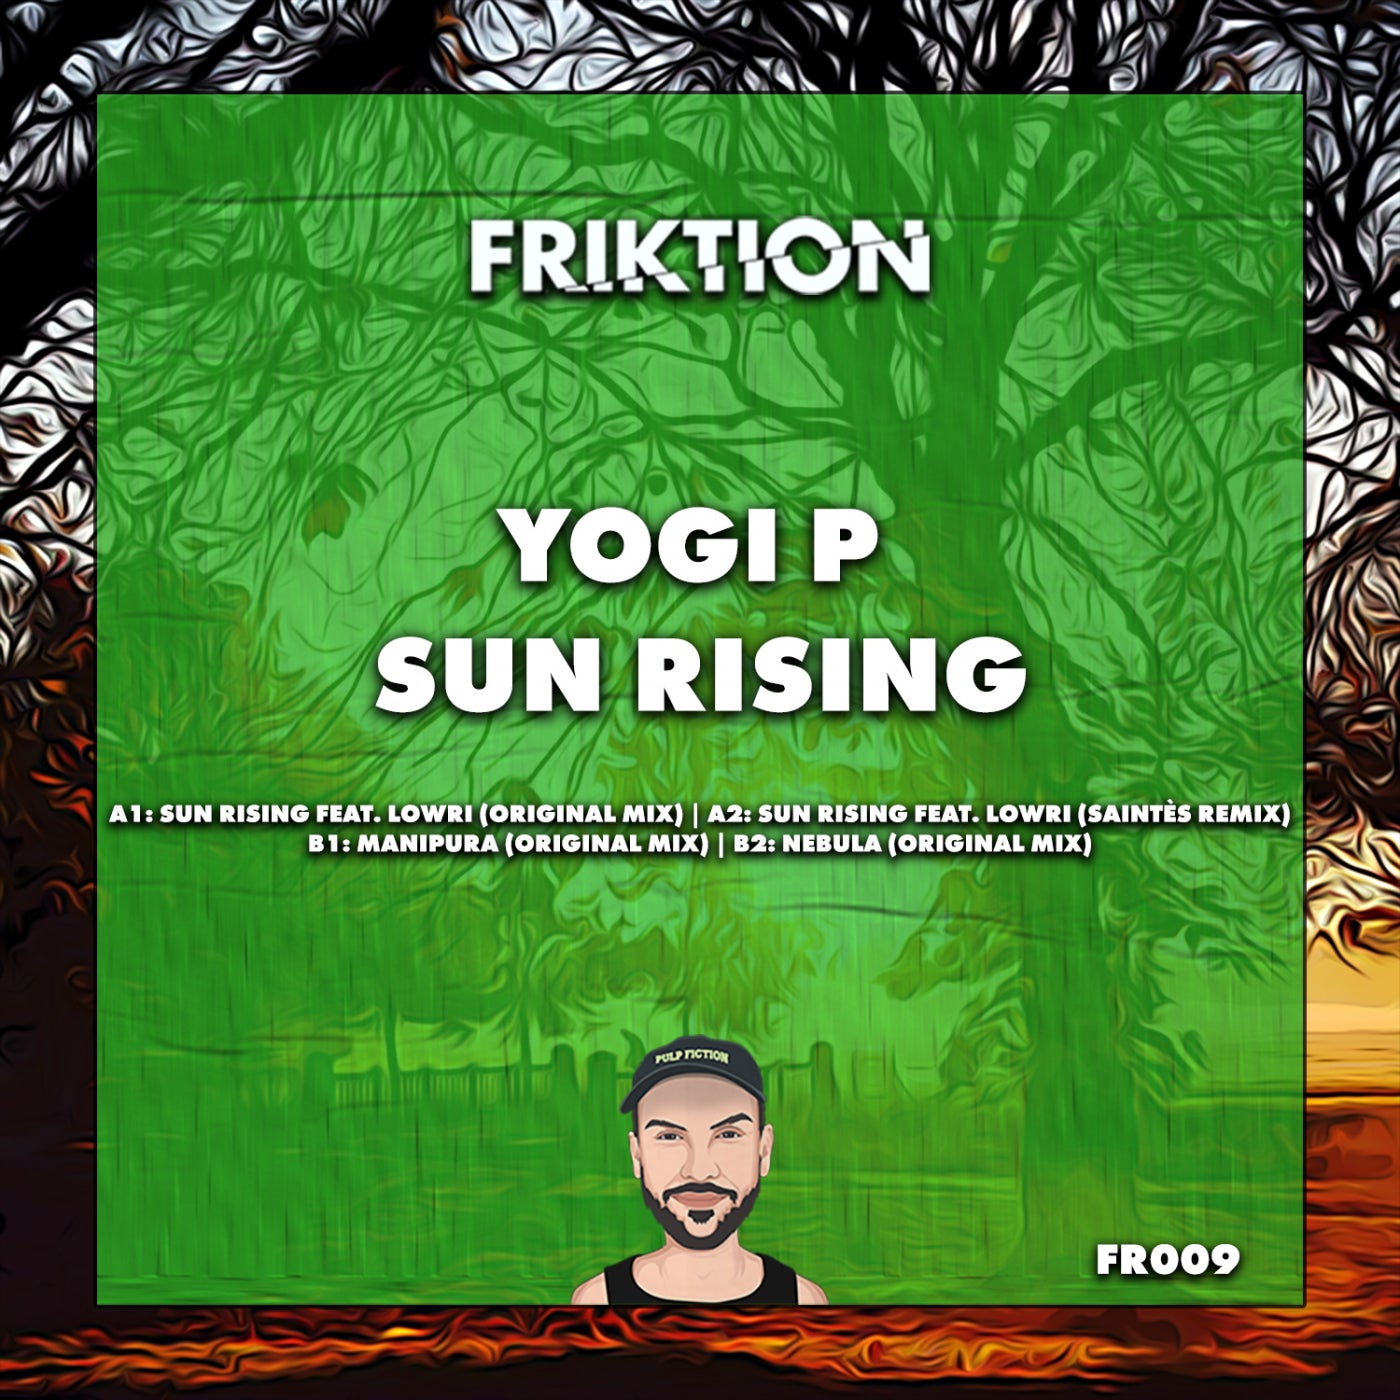 Yogi P – Sun Rising (Feat. Lowri) [FR009]